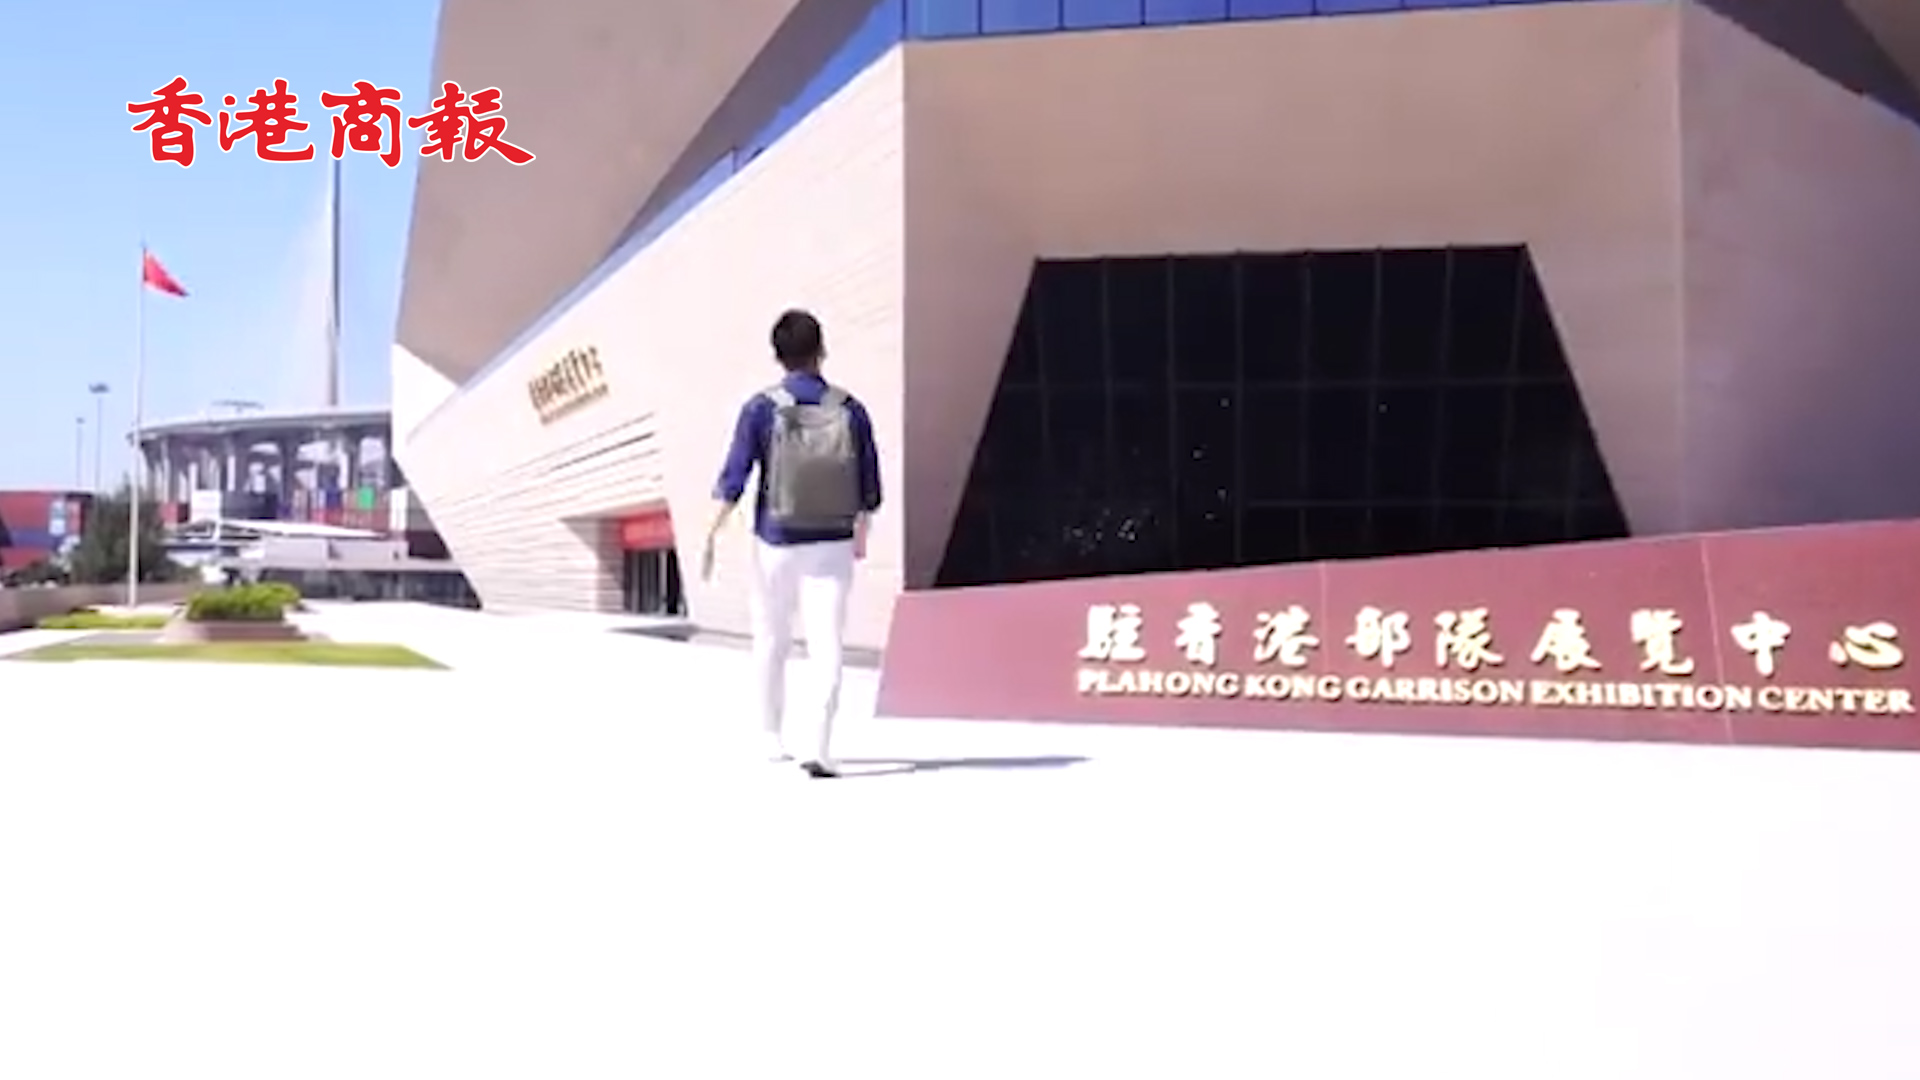 有片丨香港青年Vlog 帶你看駐香港部隊展覽中心